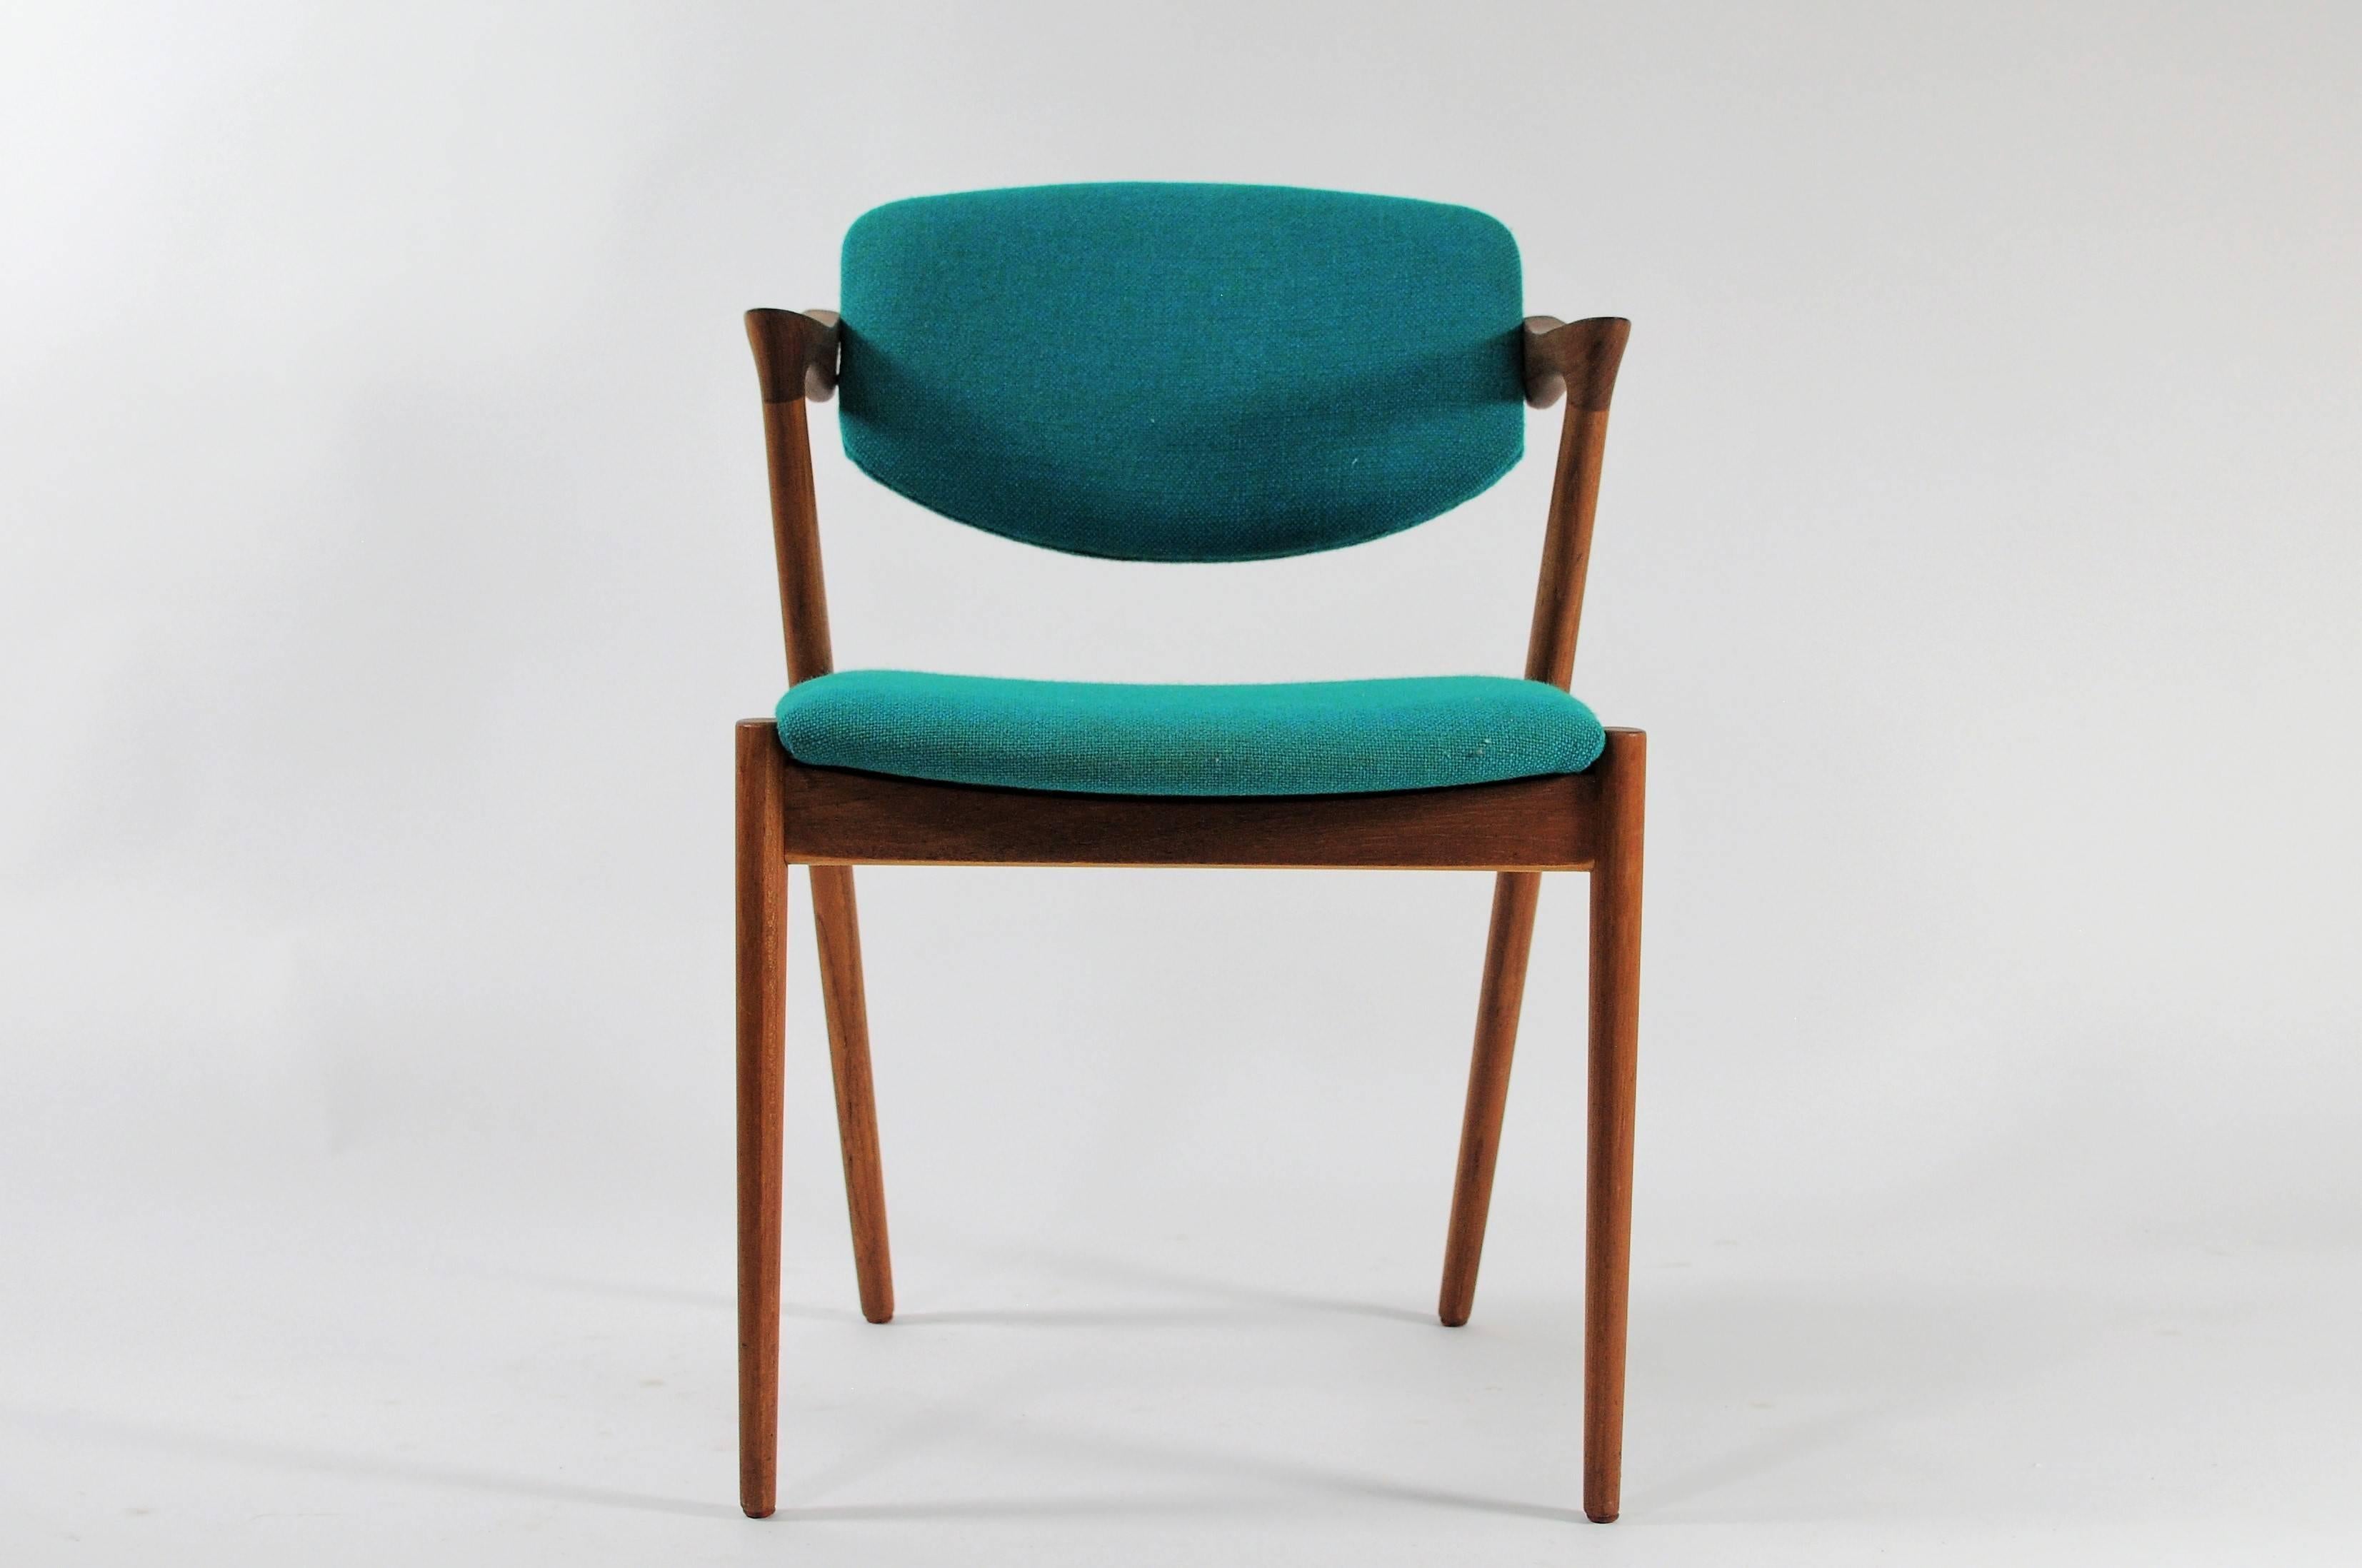 Ensemble de huit chaises de salle à manger en teck des années 1960, entièrement restaurées, par Kai Kristiansen pour Schous Møbelfabrik.

Les chaises ont le design léger et élégant typique de Kai Kristiansens, ce qui leur permet de s'intégrer